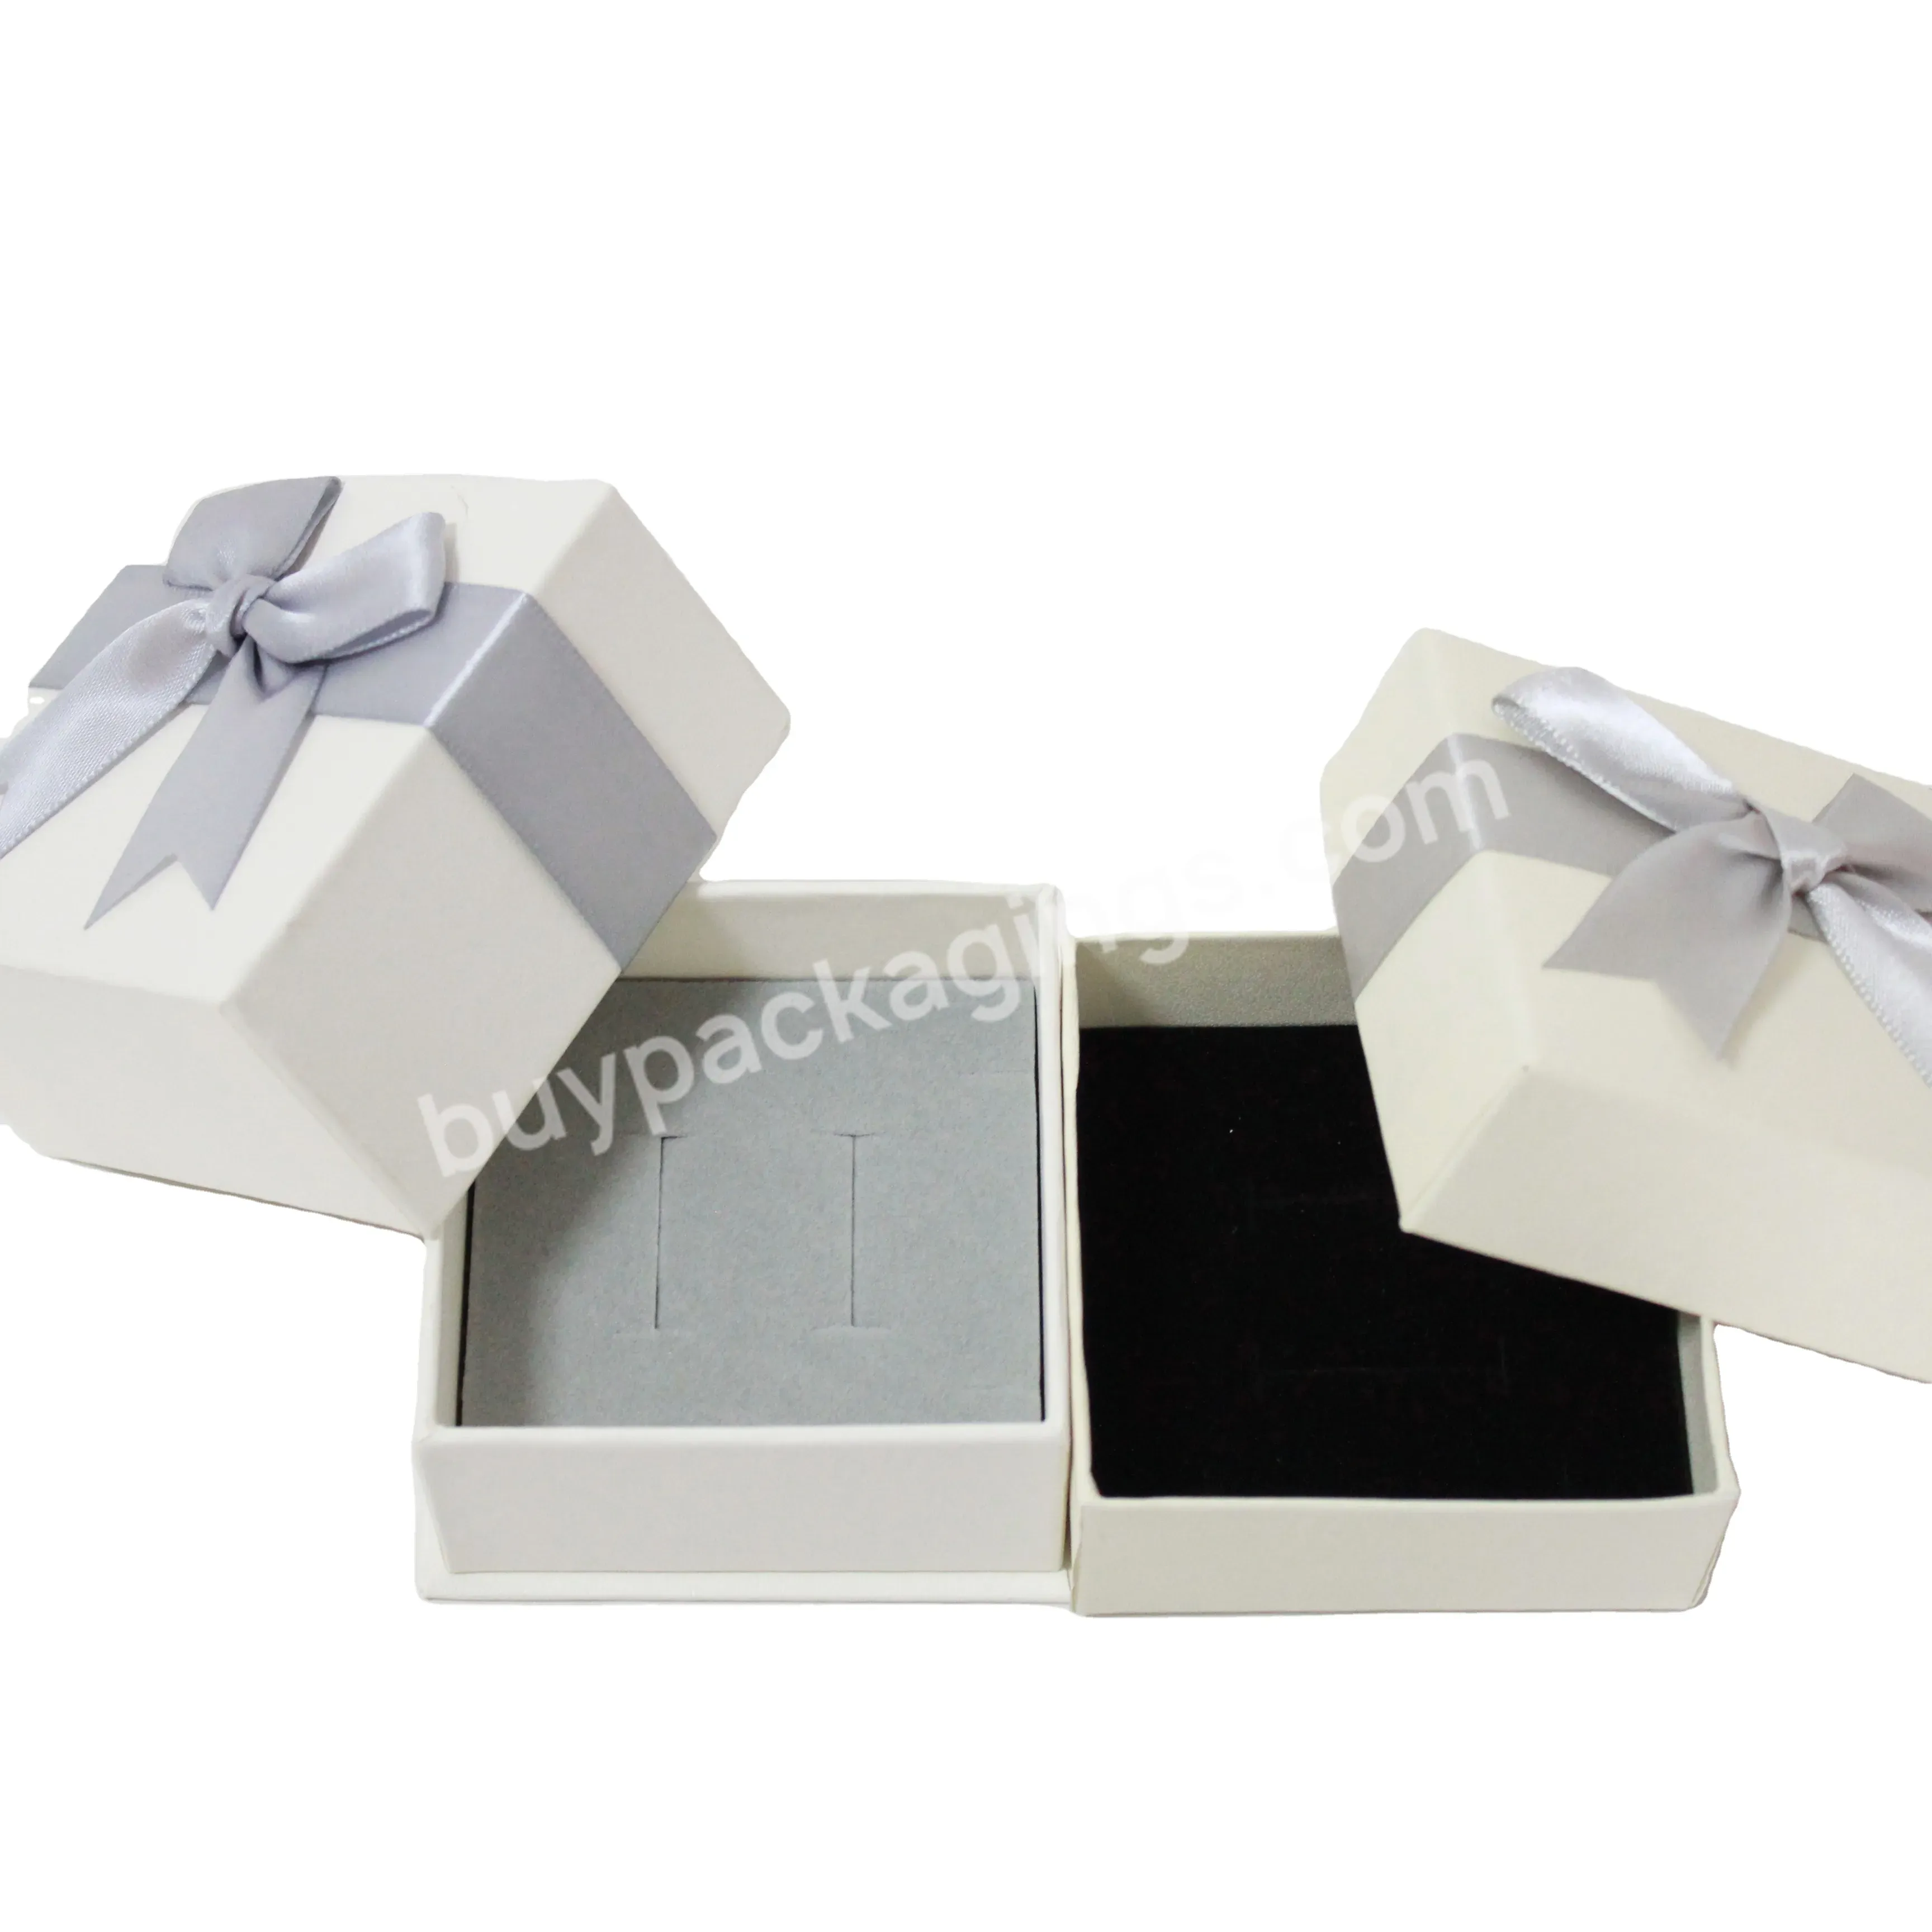 2021 Custom Luxury Ring Jewelry Engagement Ring Box Packaging Ring Box With Logo - Buy Engagement Ring Box,Ring Box With Logo,Ring Jewelry Boxes.